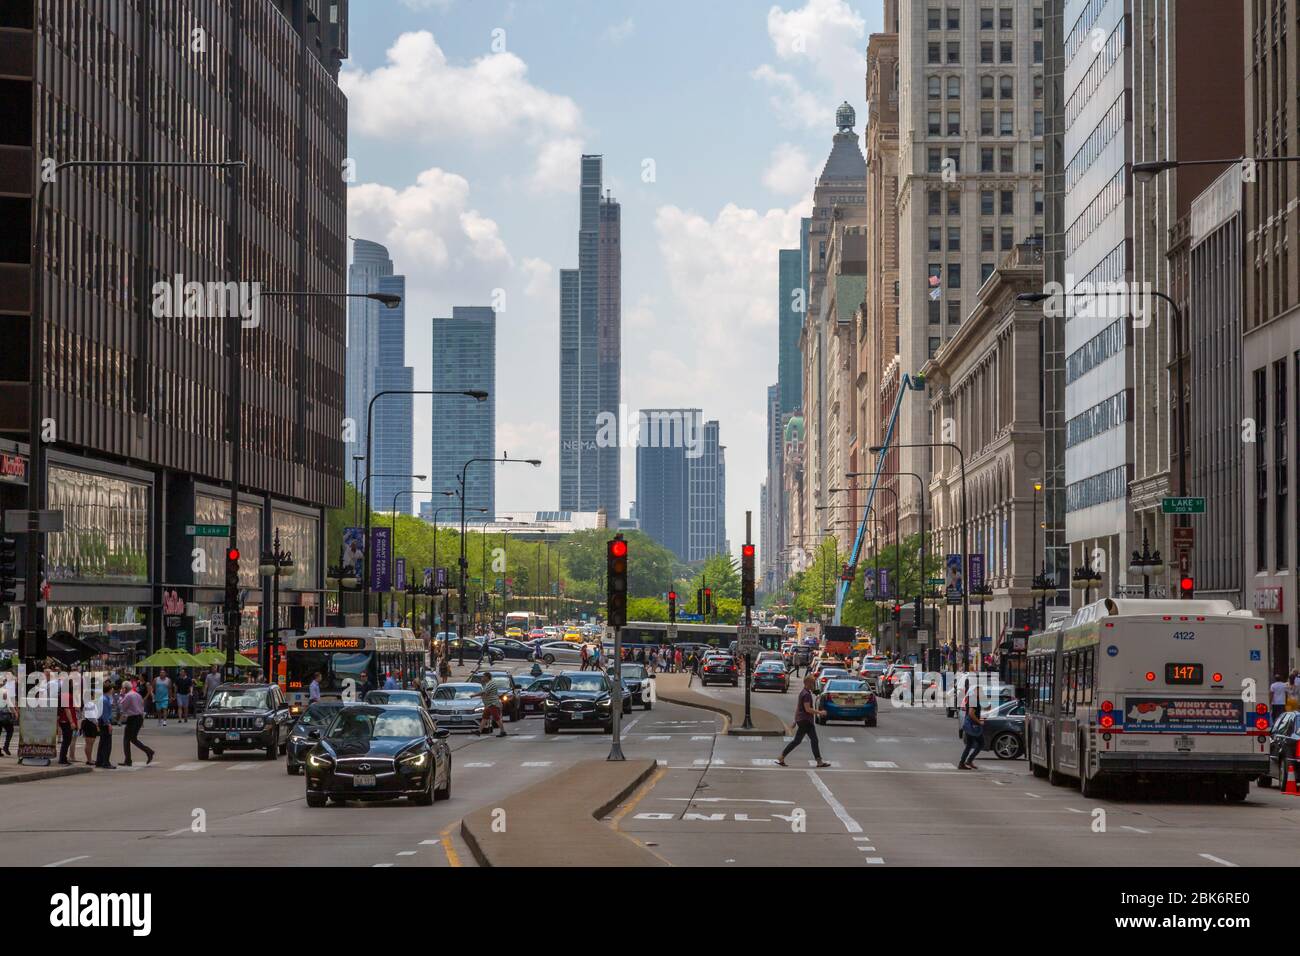 Vue du trafic sur Michigan Avenue, Chicago, Illinois, États-Unis d'Amérique, Amérique du Nord Banque D'Images